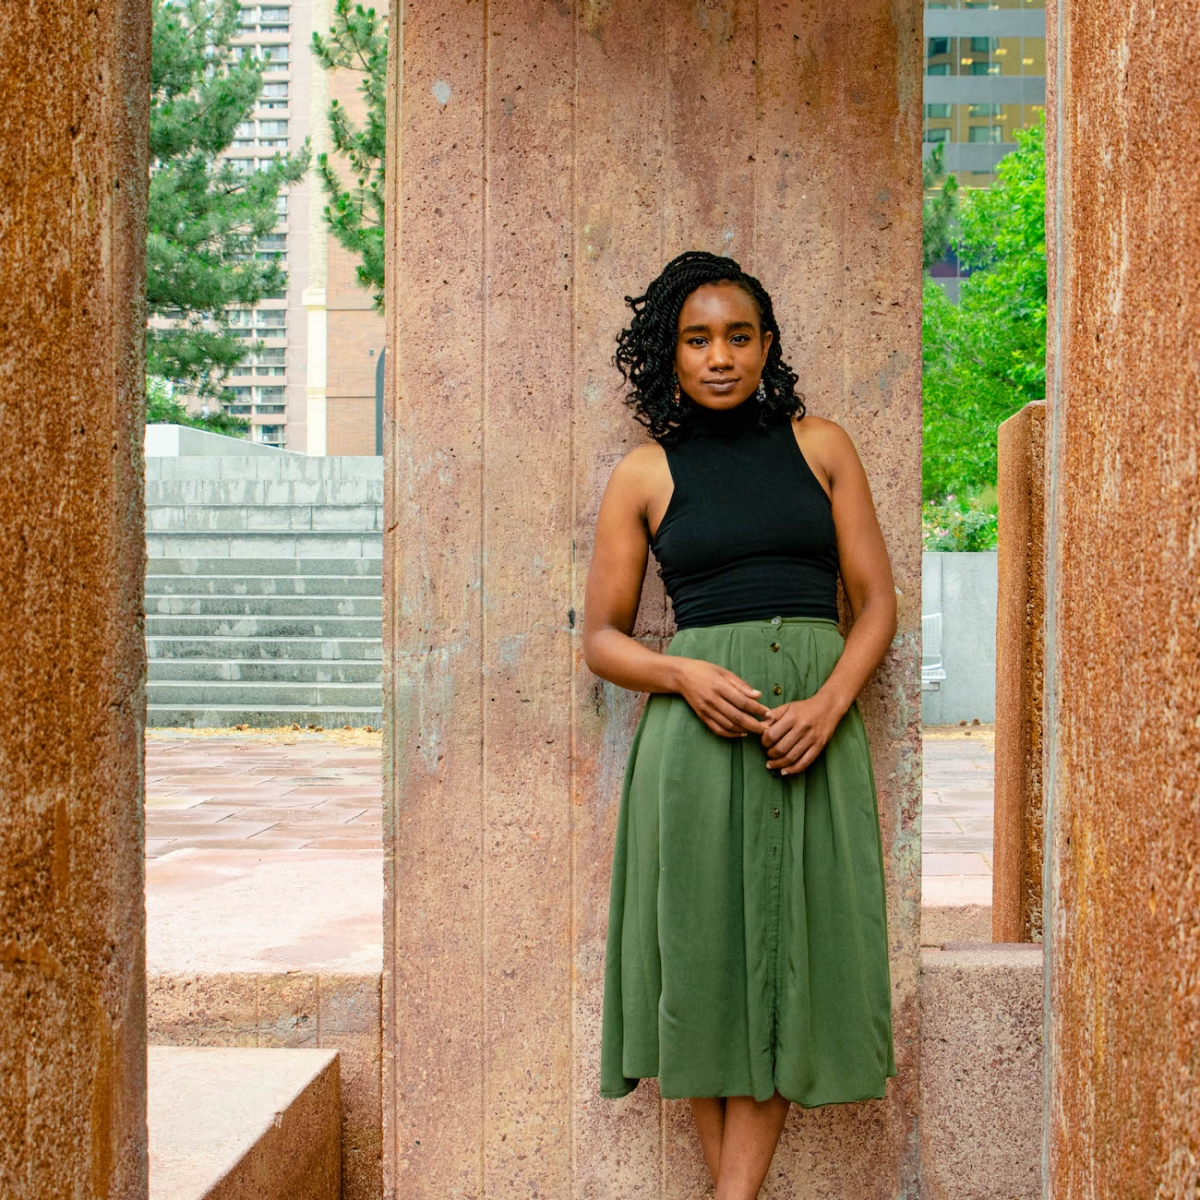 Jasmine Wiley wears black top and green skirt, stands between pillars